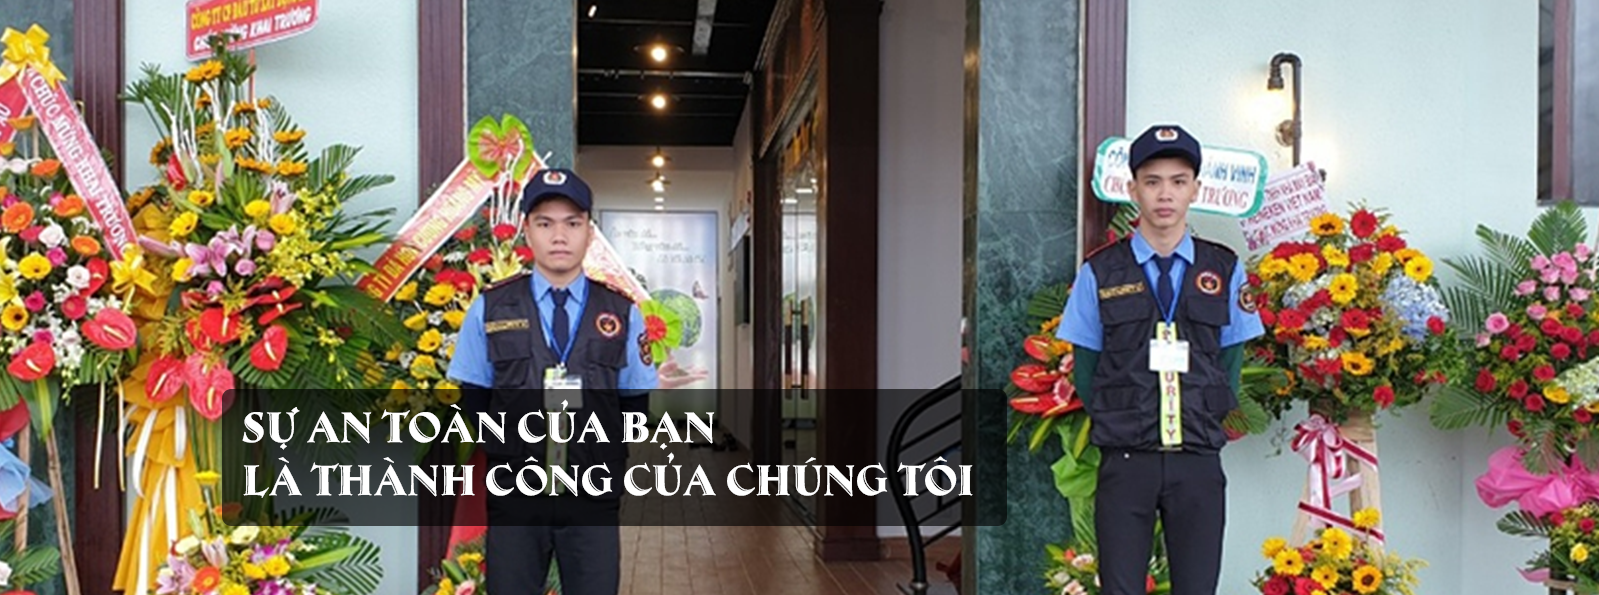 Dịch Vụ Bảo Vệ Mục Tiêu Cố Định Uy Tín Và Chuyên Nghiệp nhất tại Đà Nẵng